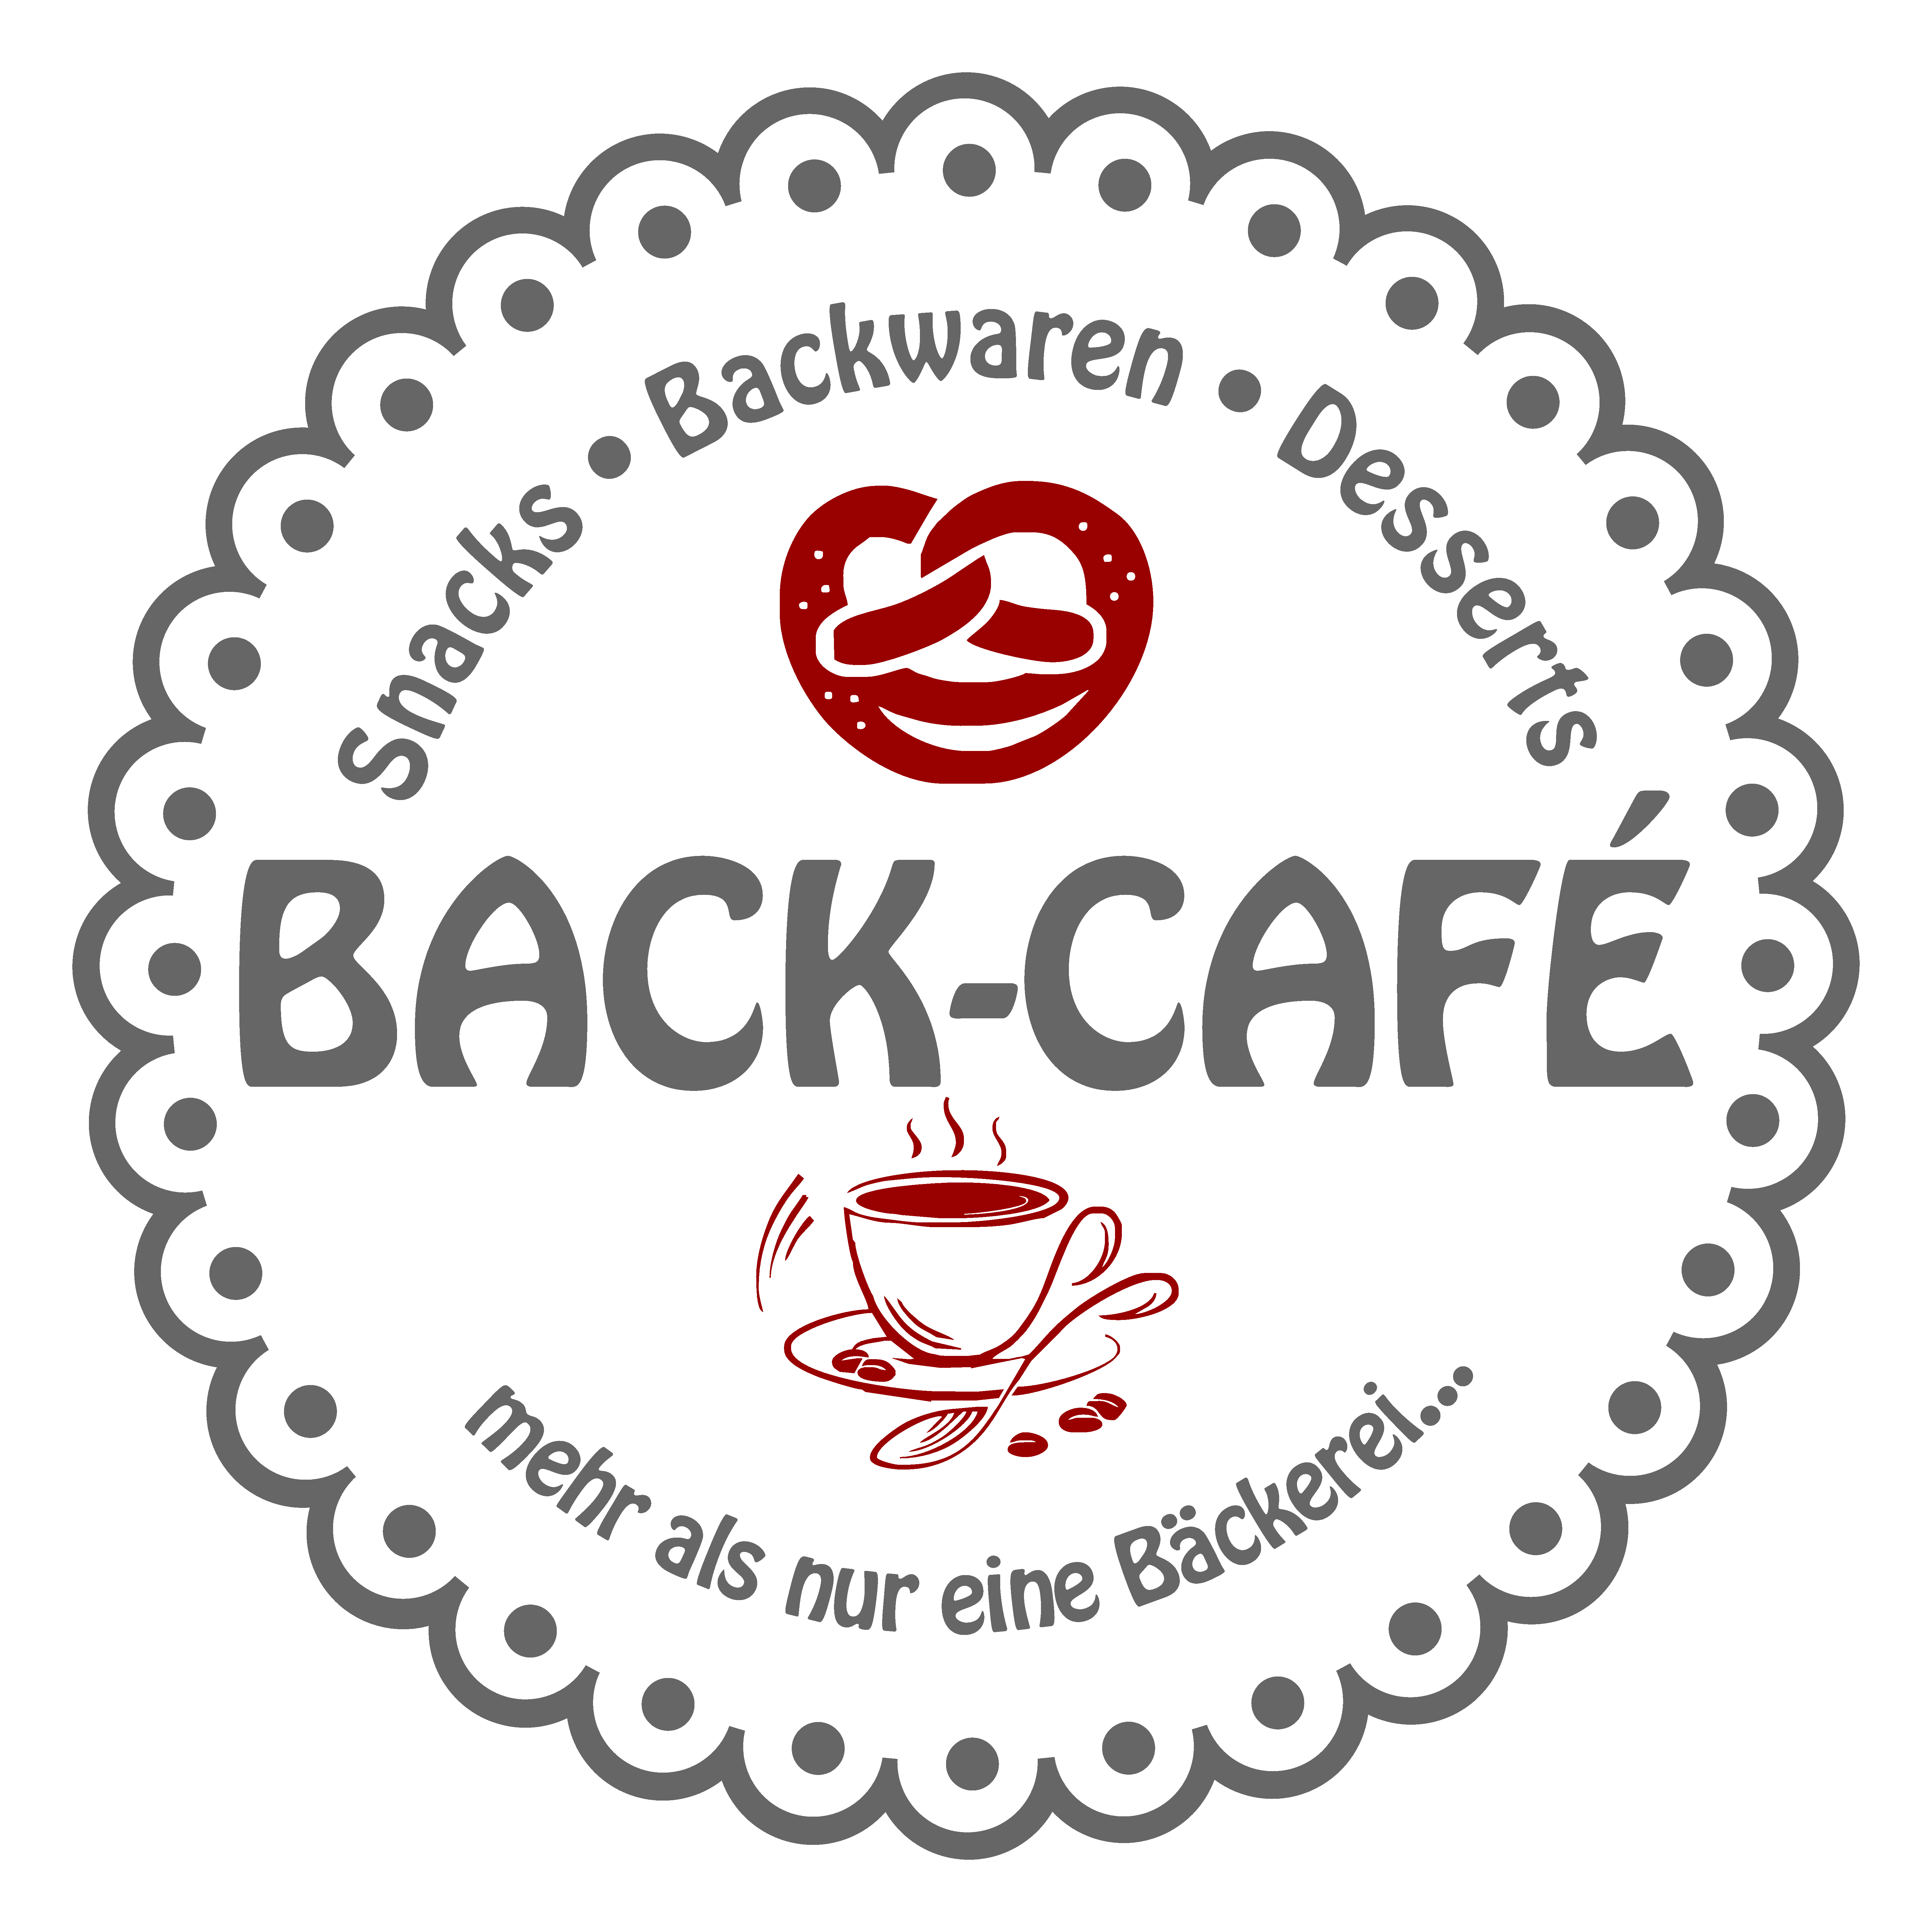 Back-Café